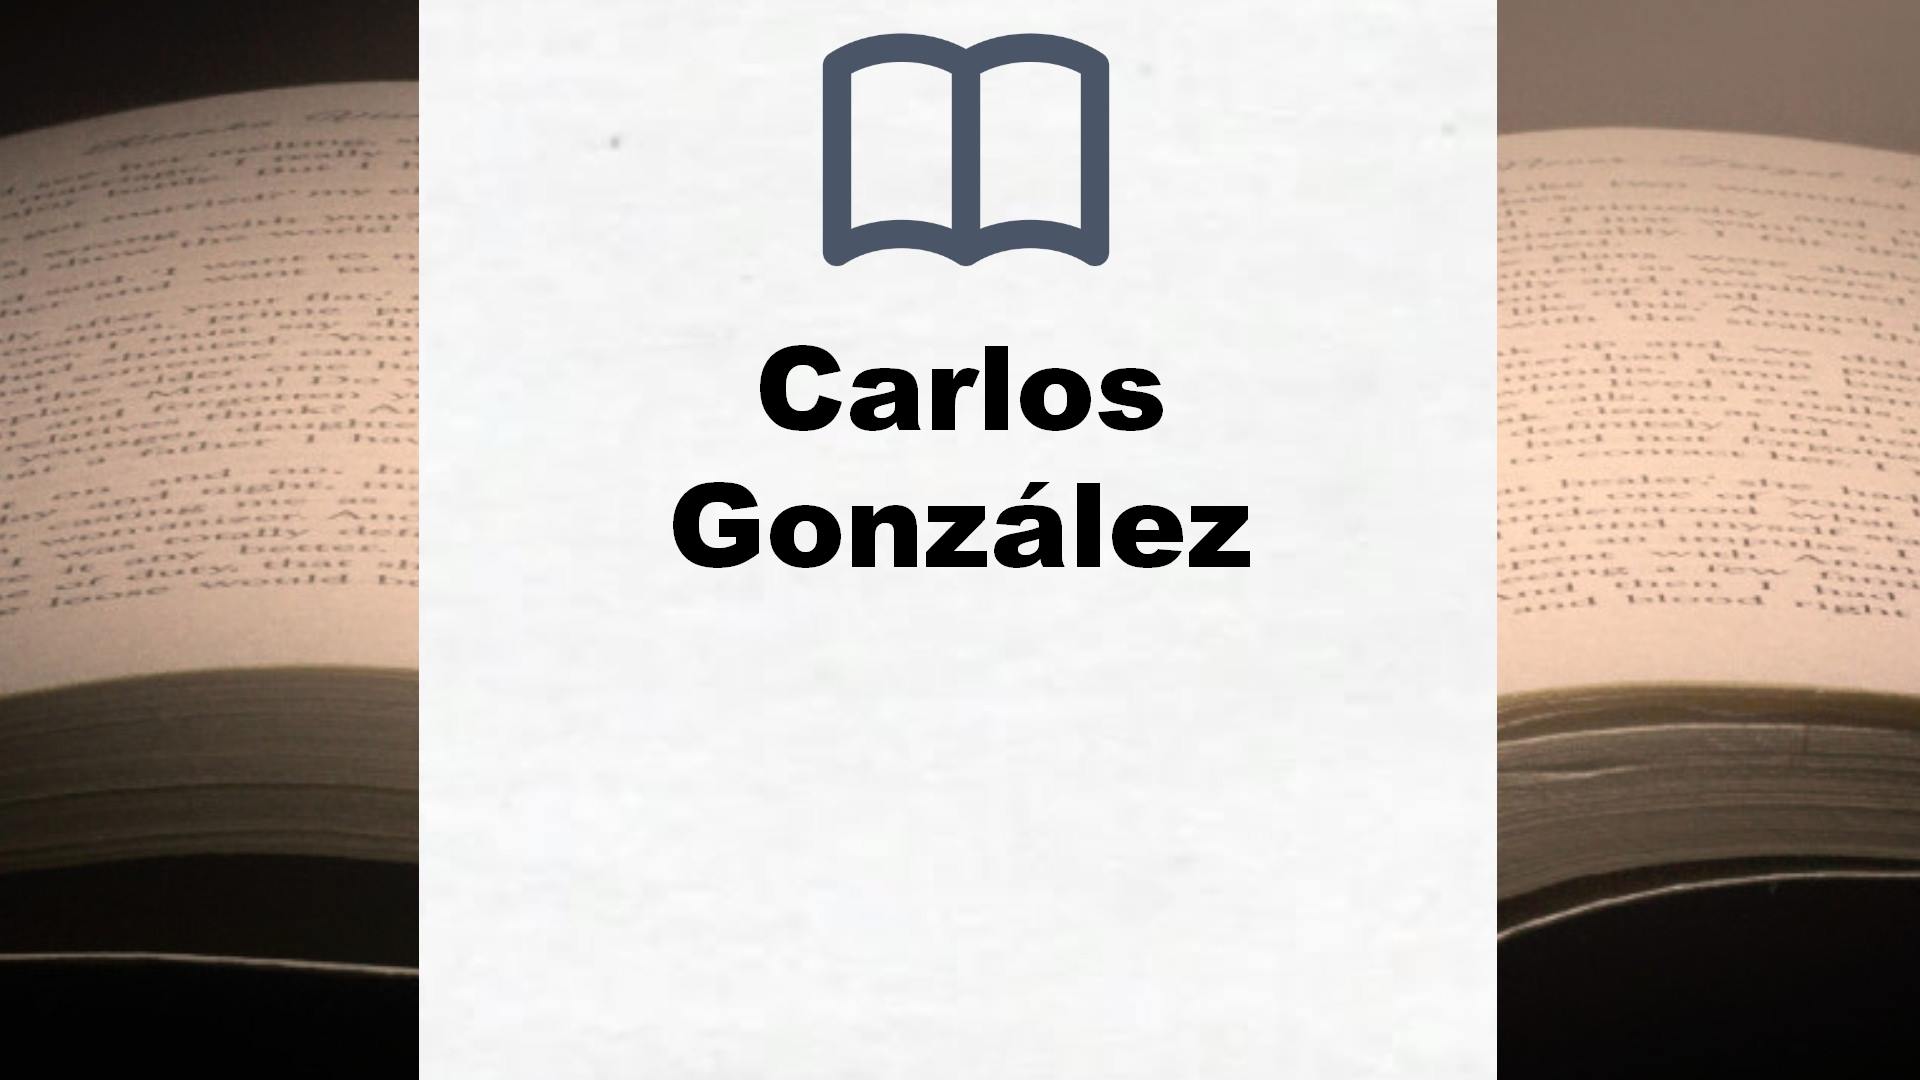 ▷ Carlos González - Todos los libros del autor (Lista Completa)